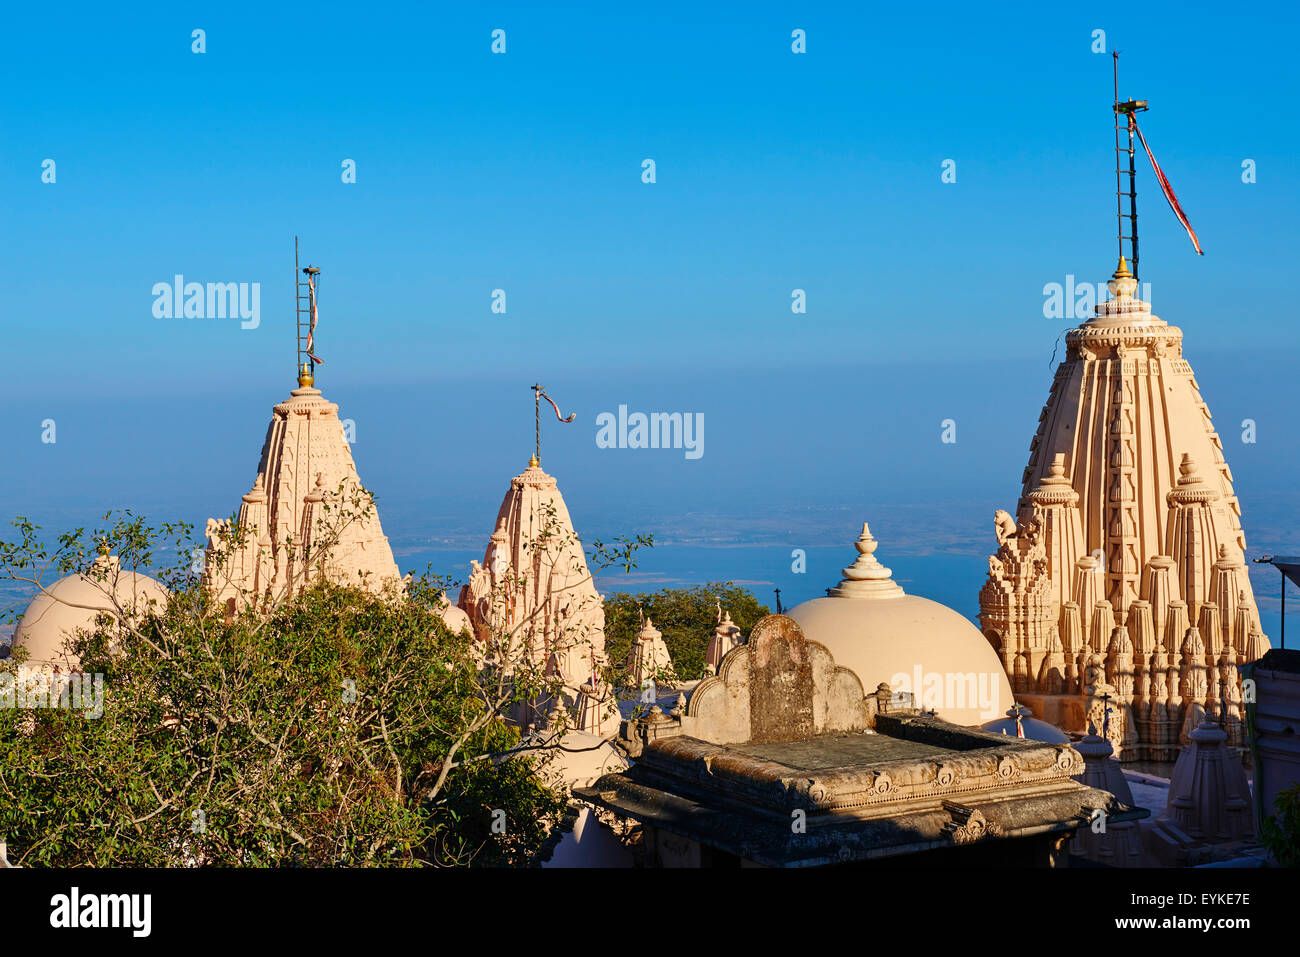 India, Gujarat, Palitana, Shatrunjaya temple Stock Photo